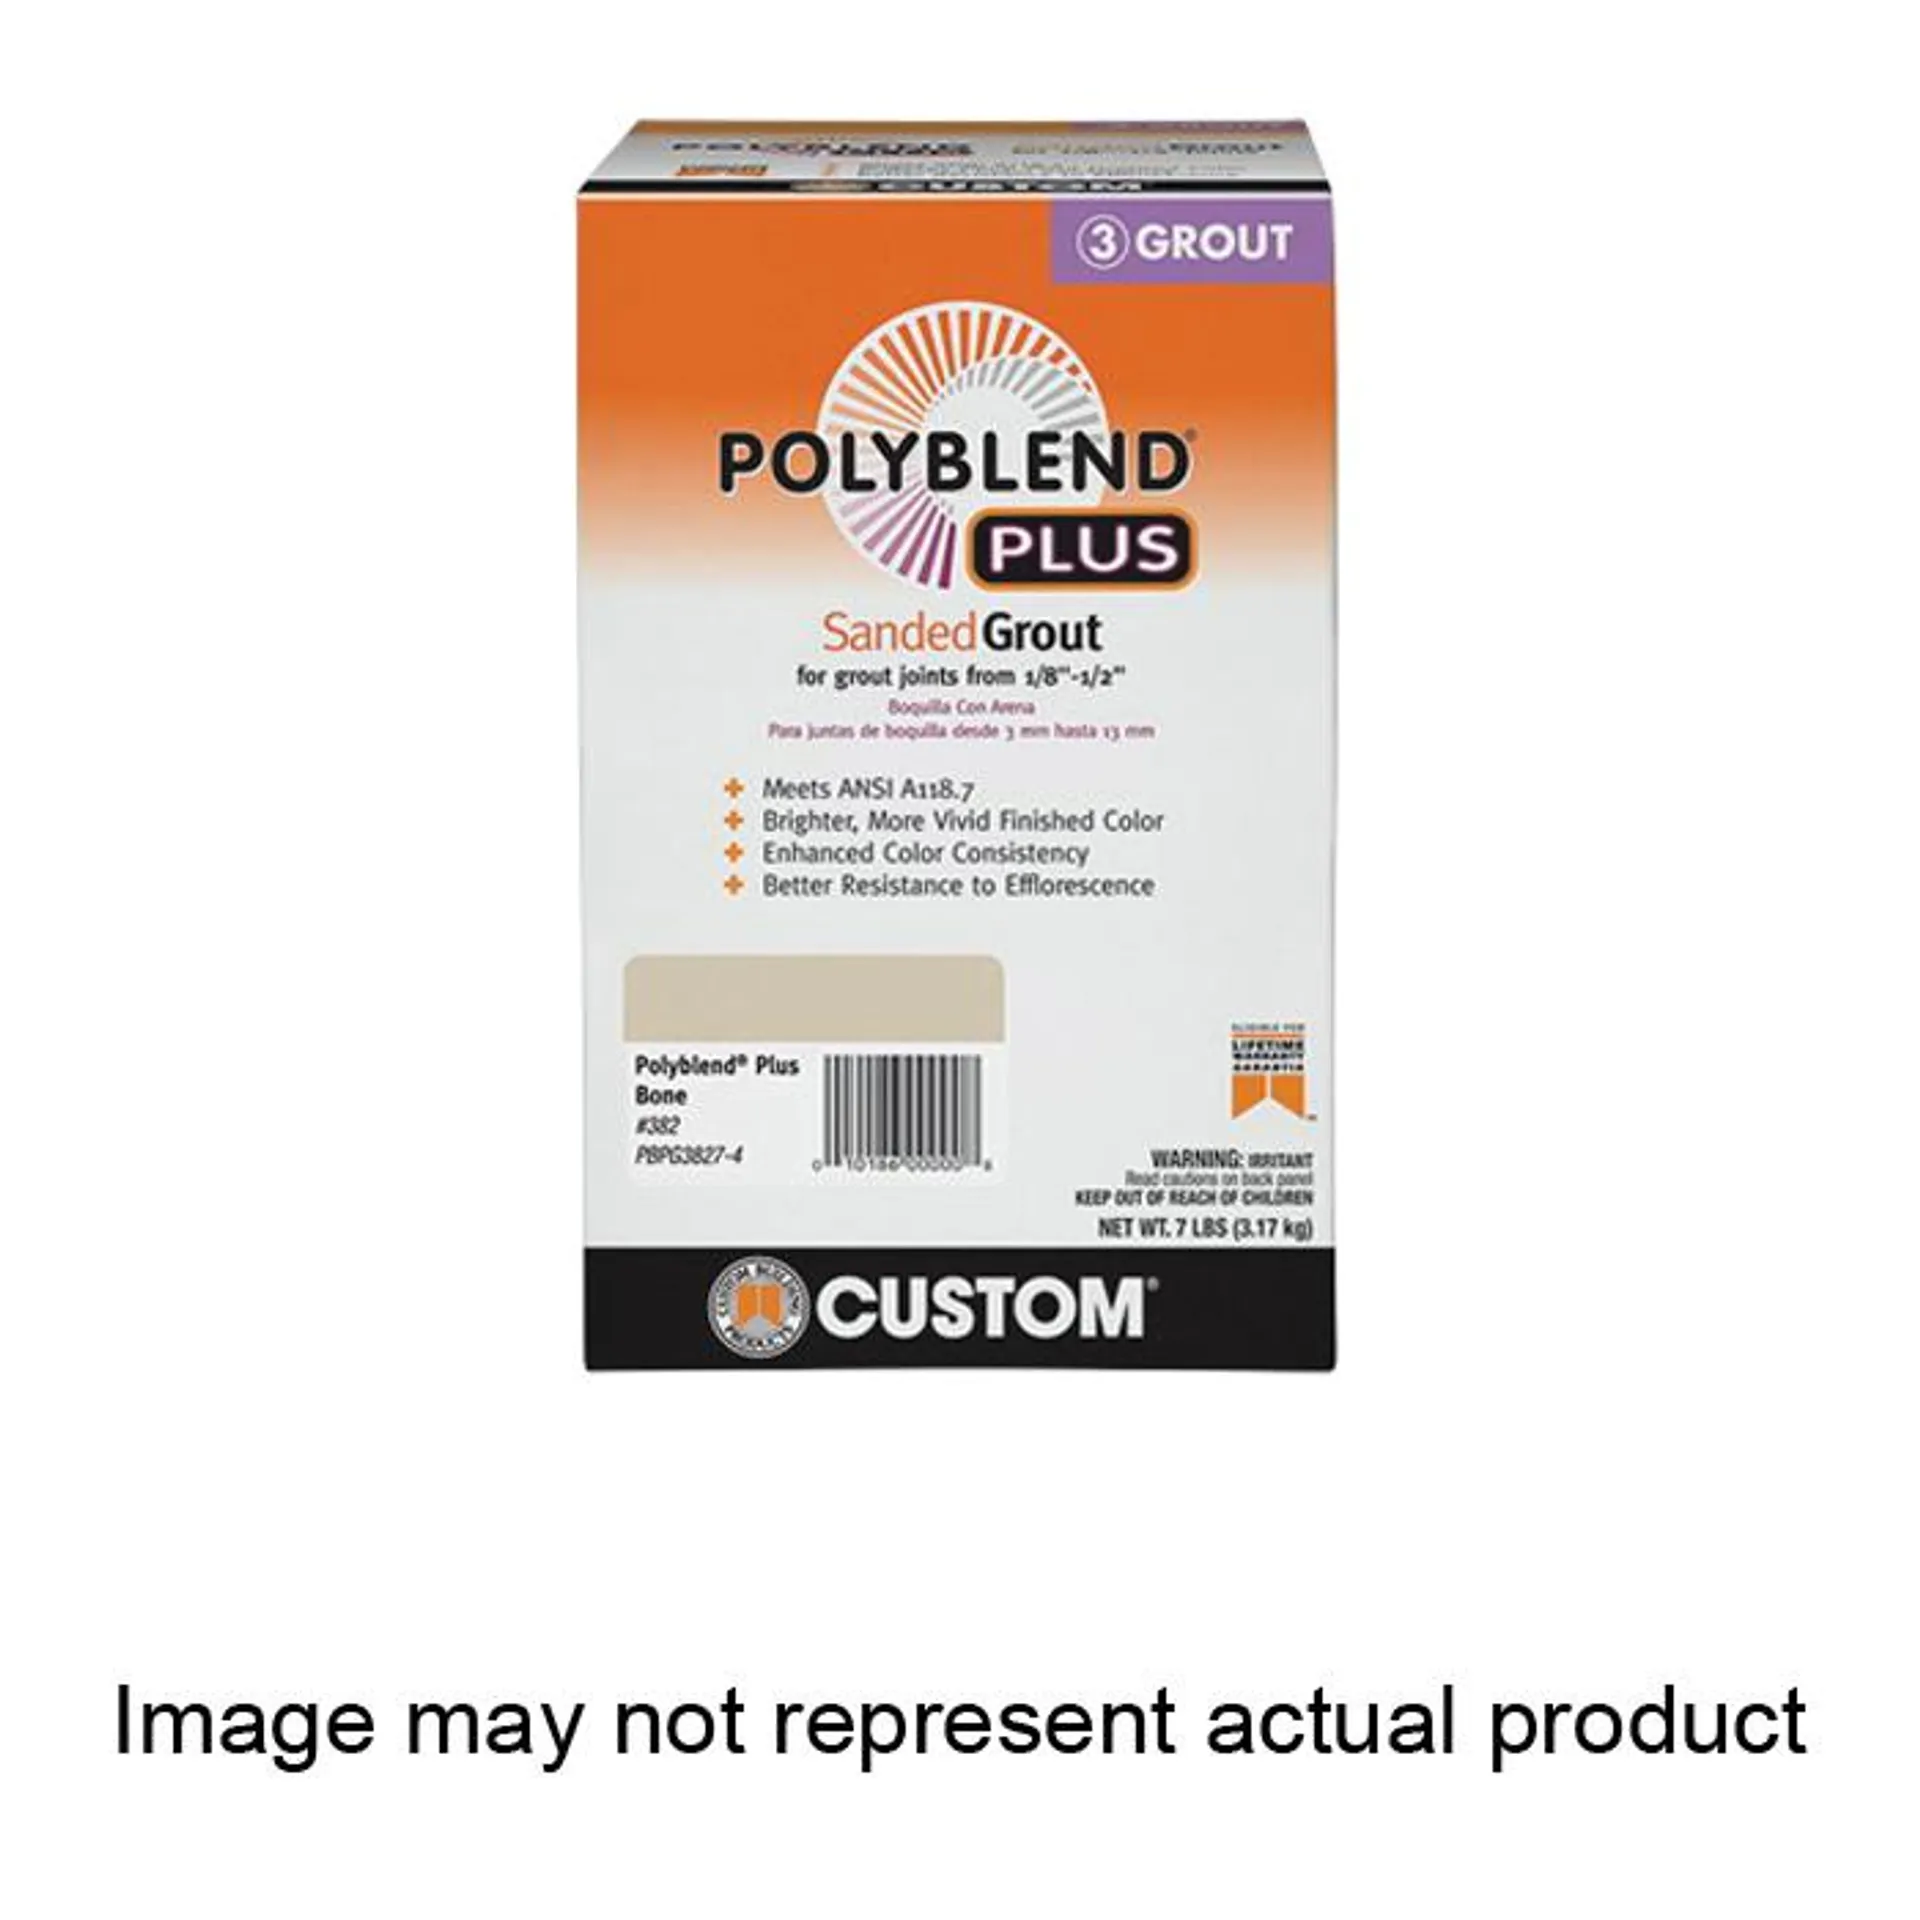 Custom Polyblend Plus PBGP6477-4 Sanded Grout, Brown Velvet, 7 lb Box